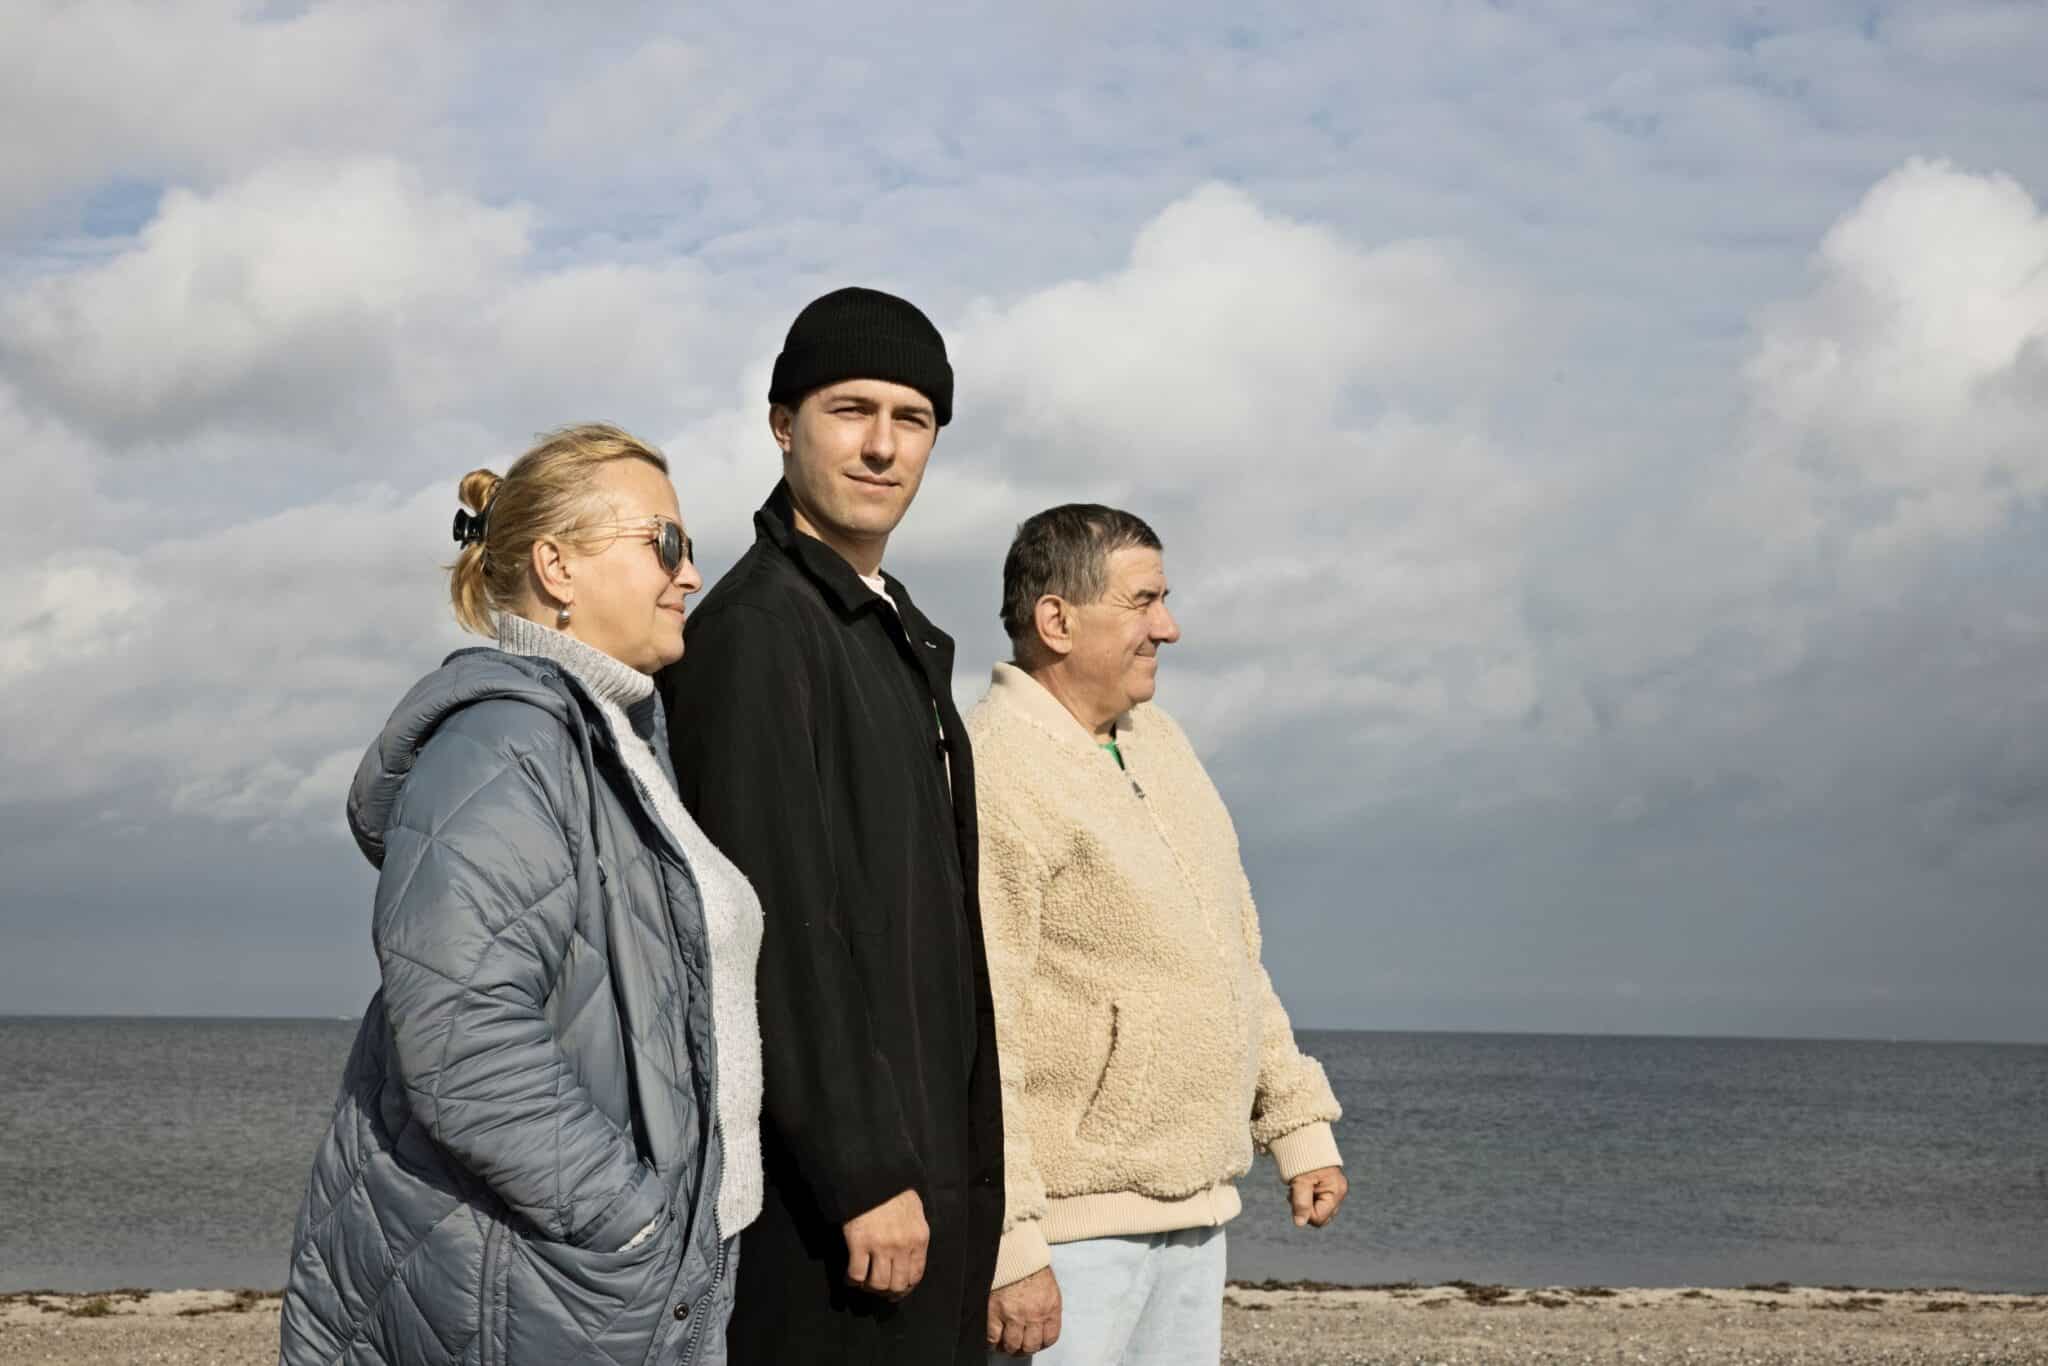 Myroslav går med sine forældre langs stranden i Amager Strandpark. Myroslav smiler til kameraet, imens hans mor og far kigger fremad. De er alle tre døve og flygtet fra krigen i Ukraine. Nu skal de finde fodfæste i Danmark.